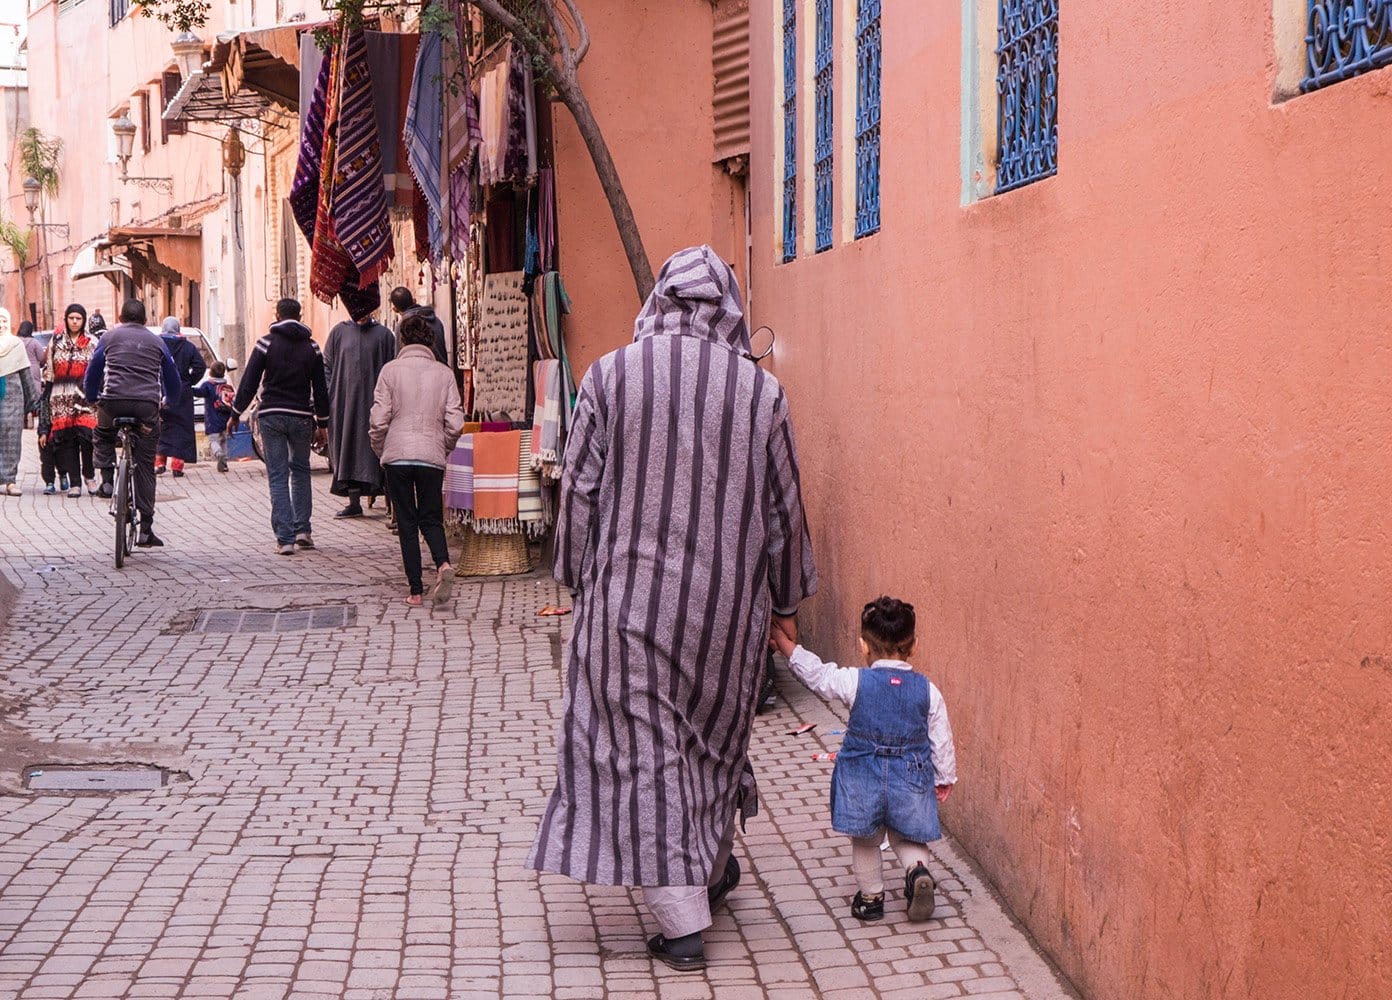 Man in a striped cloak walking with a little boy in Marrakech